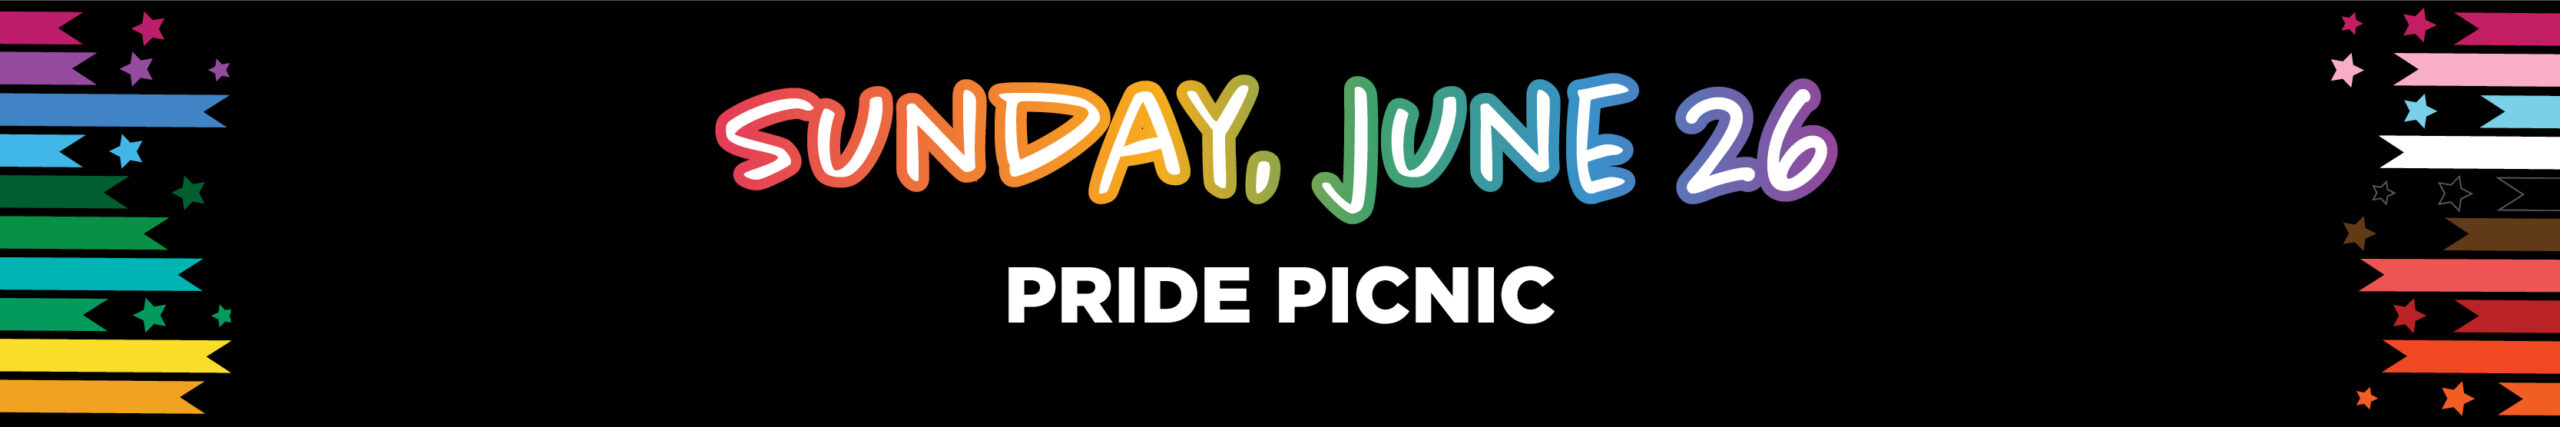 Sunday, June 26 Pride Picnic